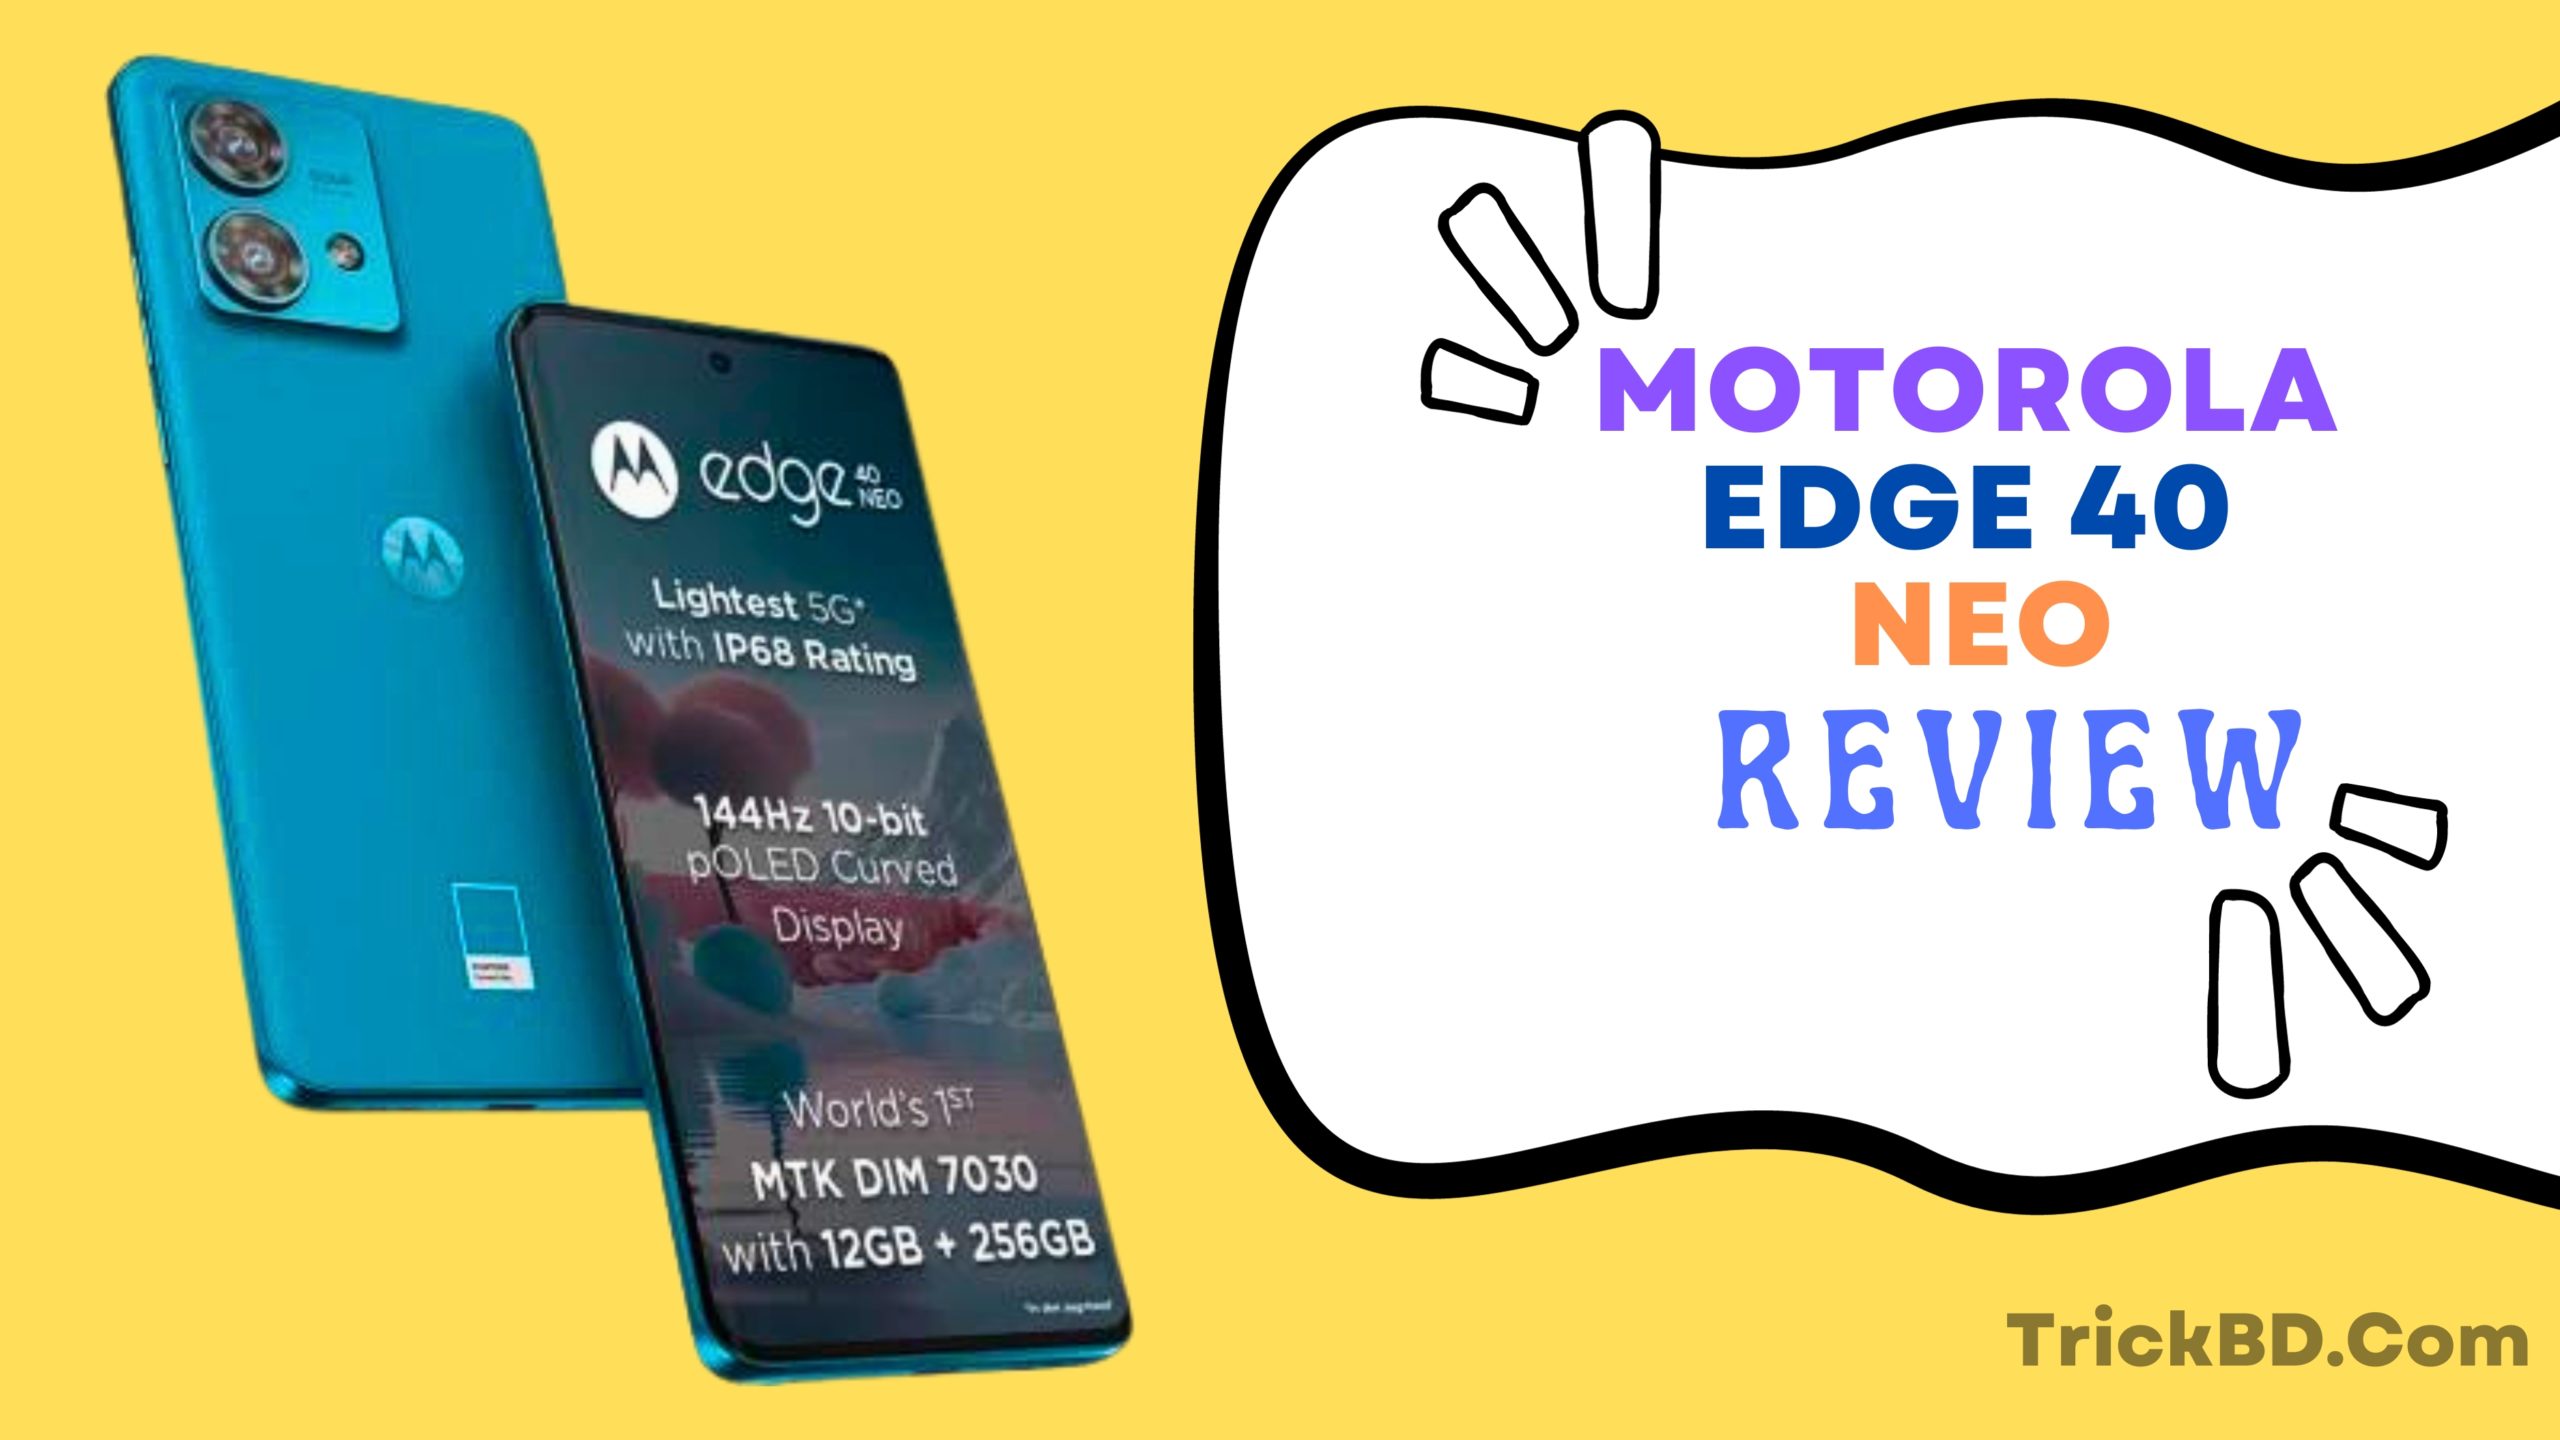 Moto Edge 40 Neo